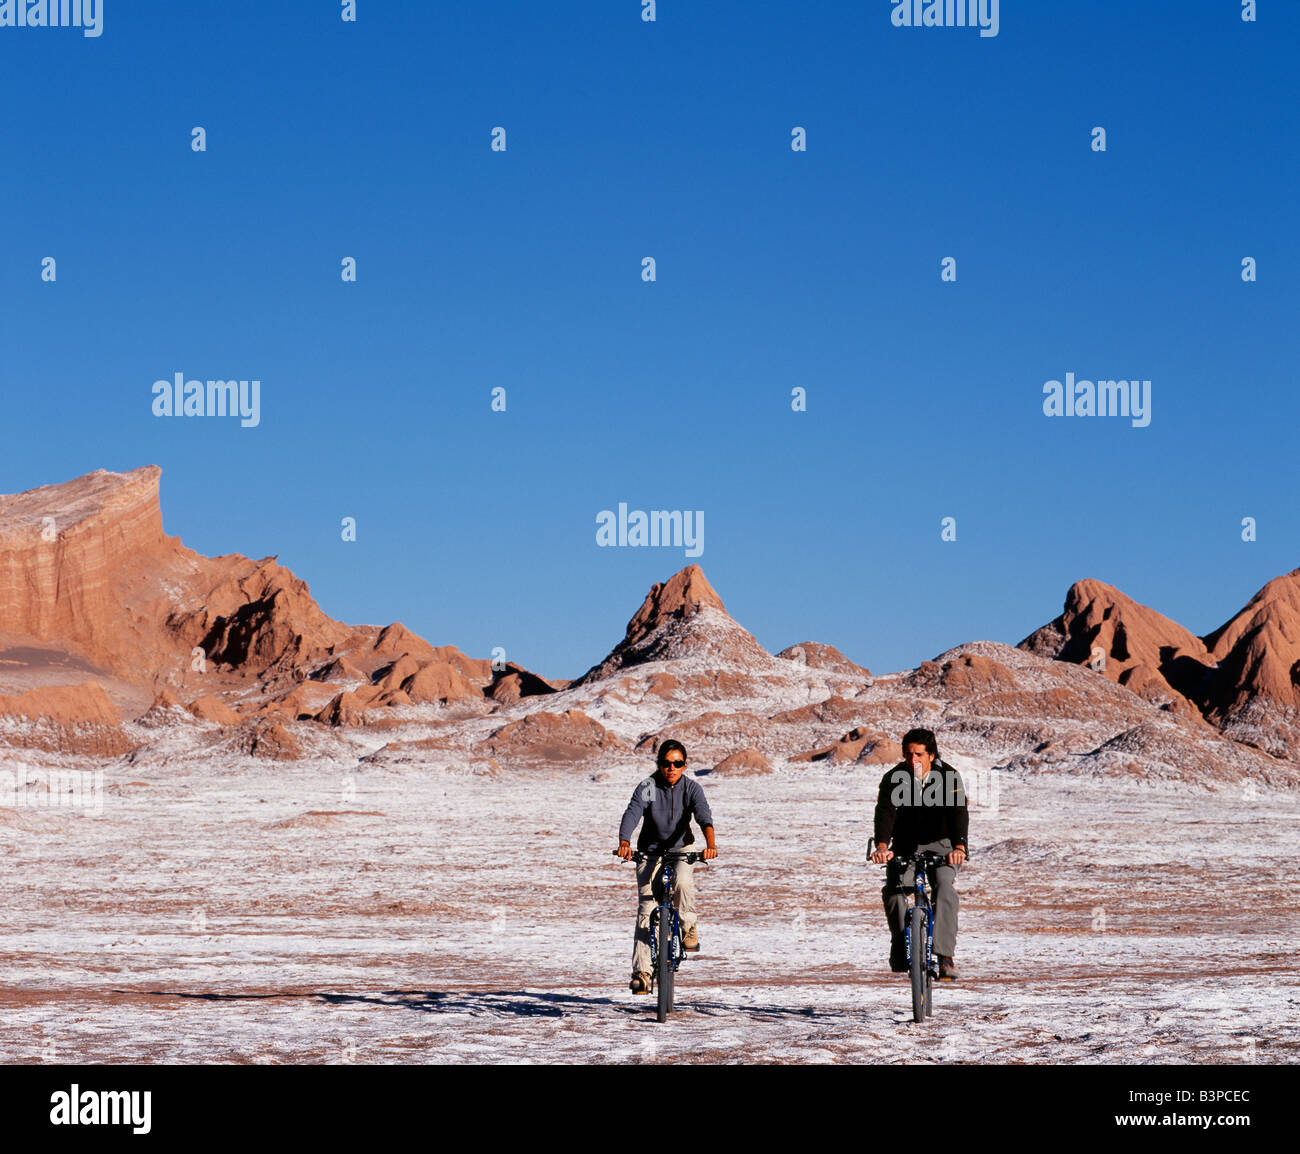 Chile, Atacama-Wüste, San Pedro de Atacama. Touristen-Mountainbiken in der eindrucksvollen Landschaft der Moon Valley in der Nähe von San Pedro de Atacama in der Atacama-Wüste, die geprägt ist von Wind erodiert Hügeln und einem mineralischen Käserand Talboden. Stockfoto